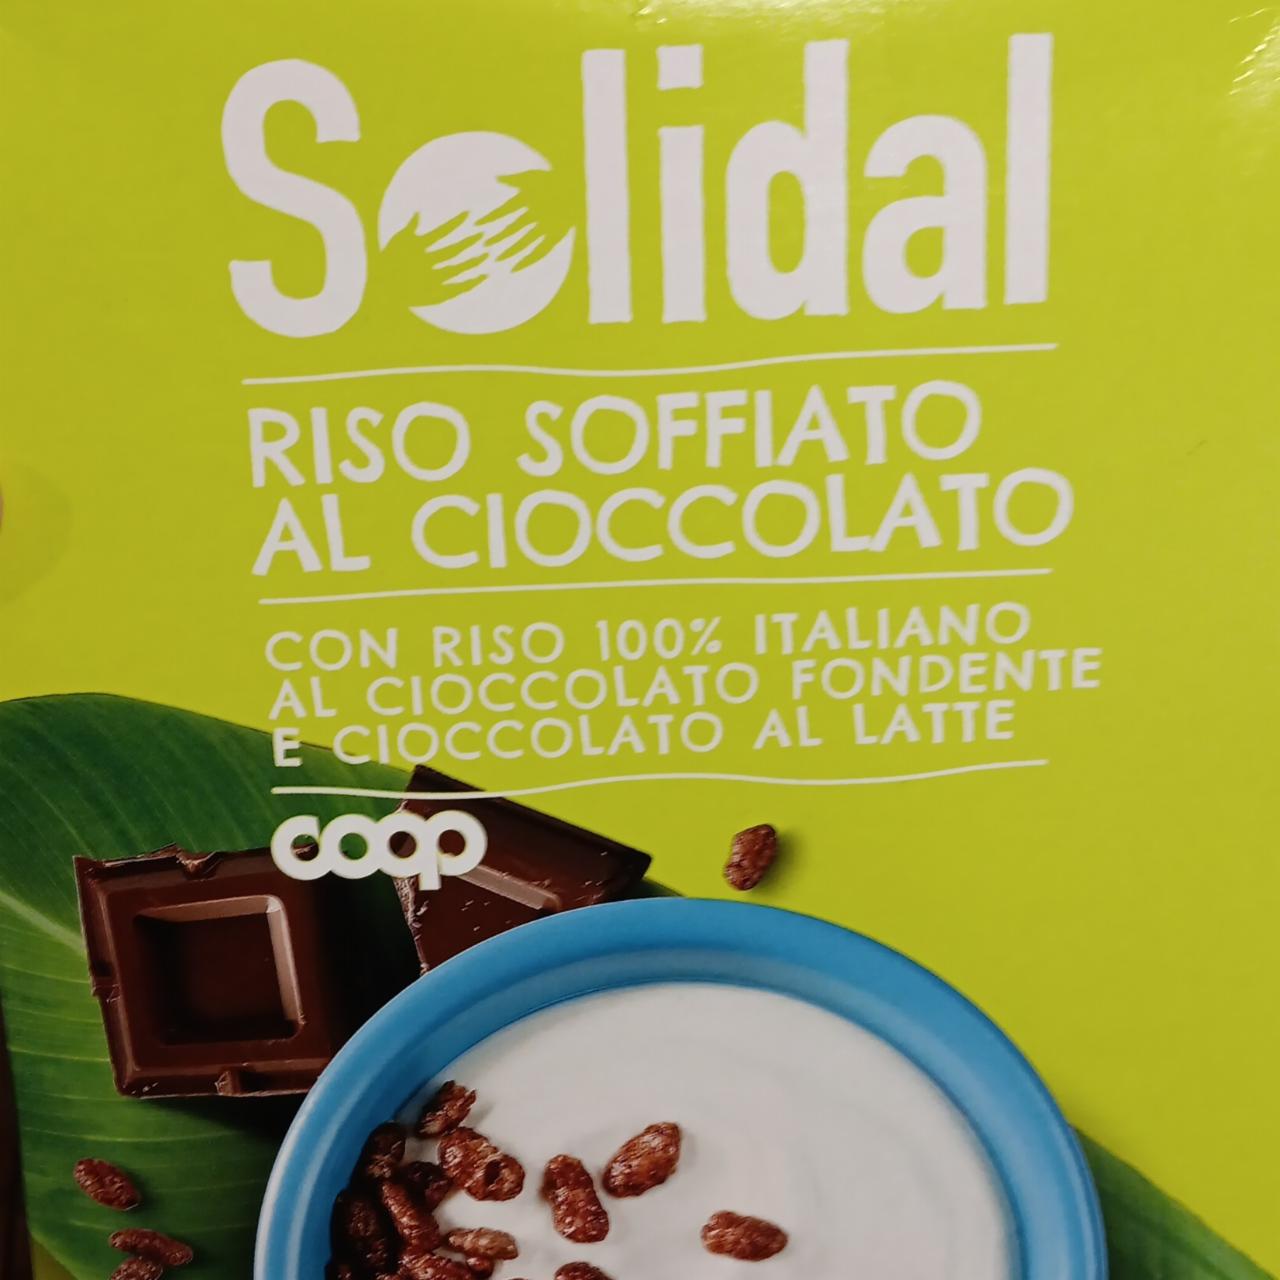 Fotografie - Riso soffiato al cioccolato Solidal Coop